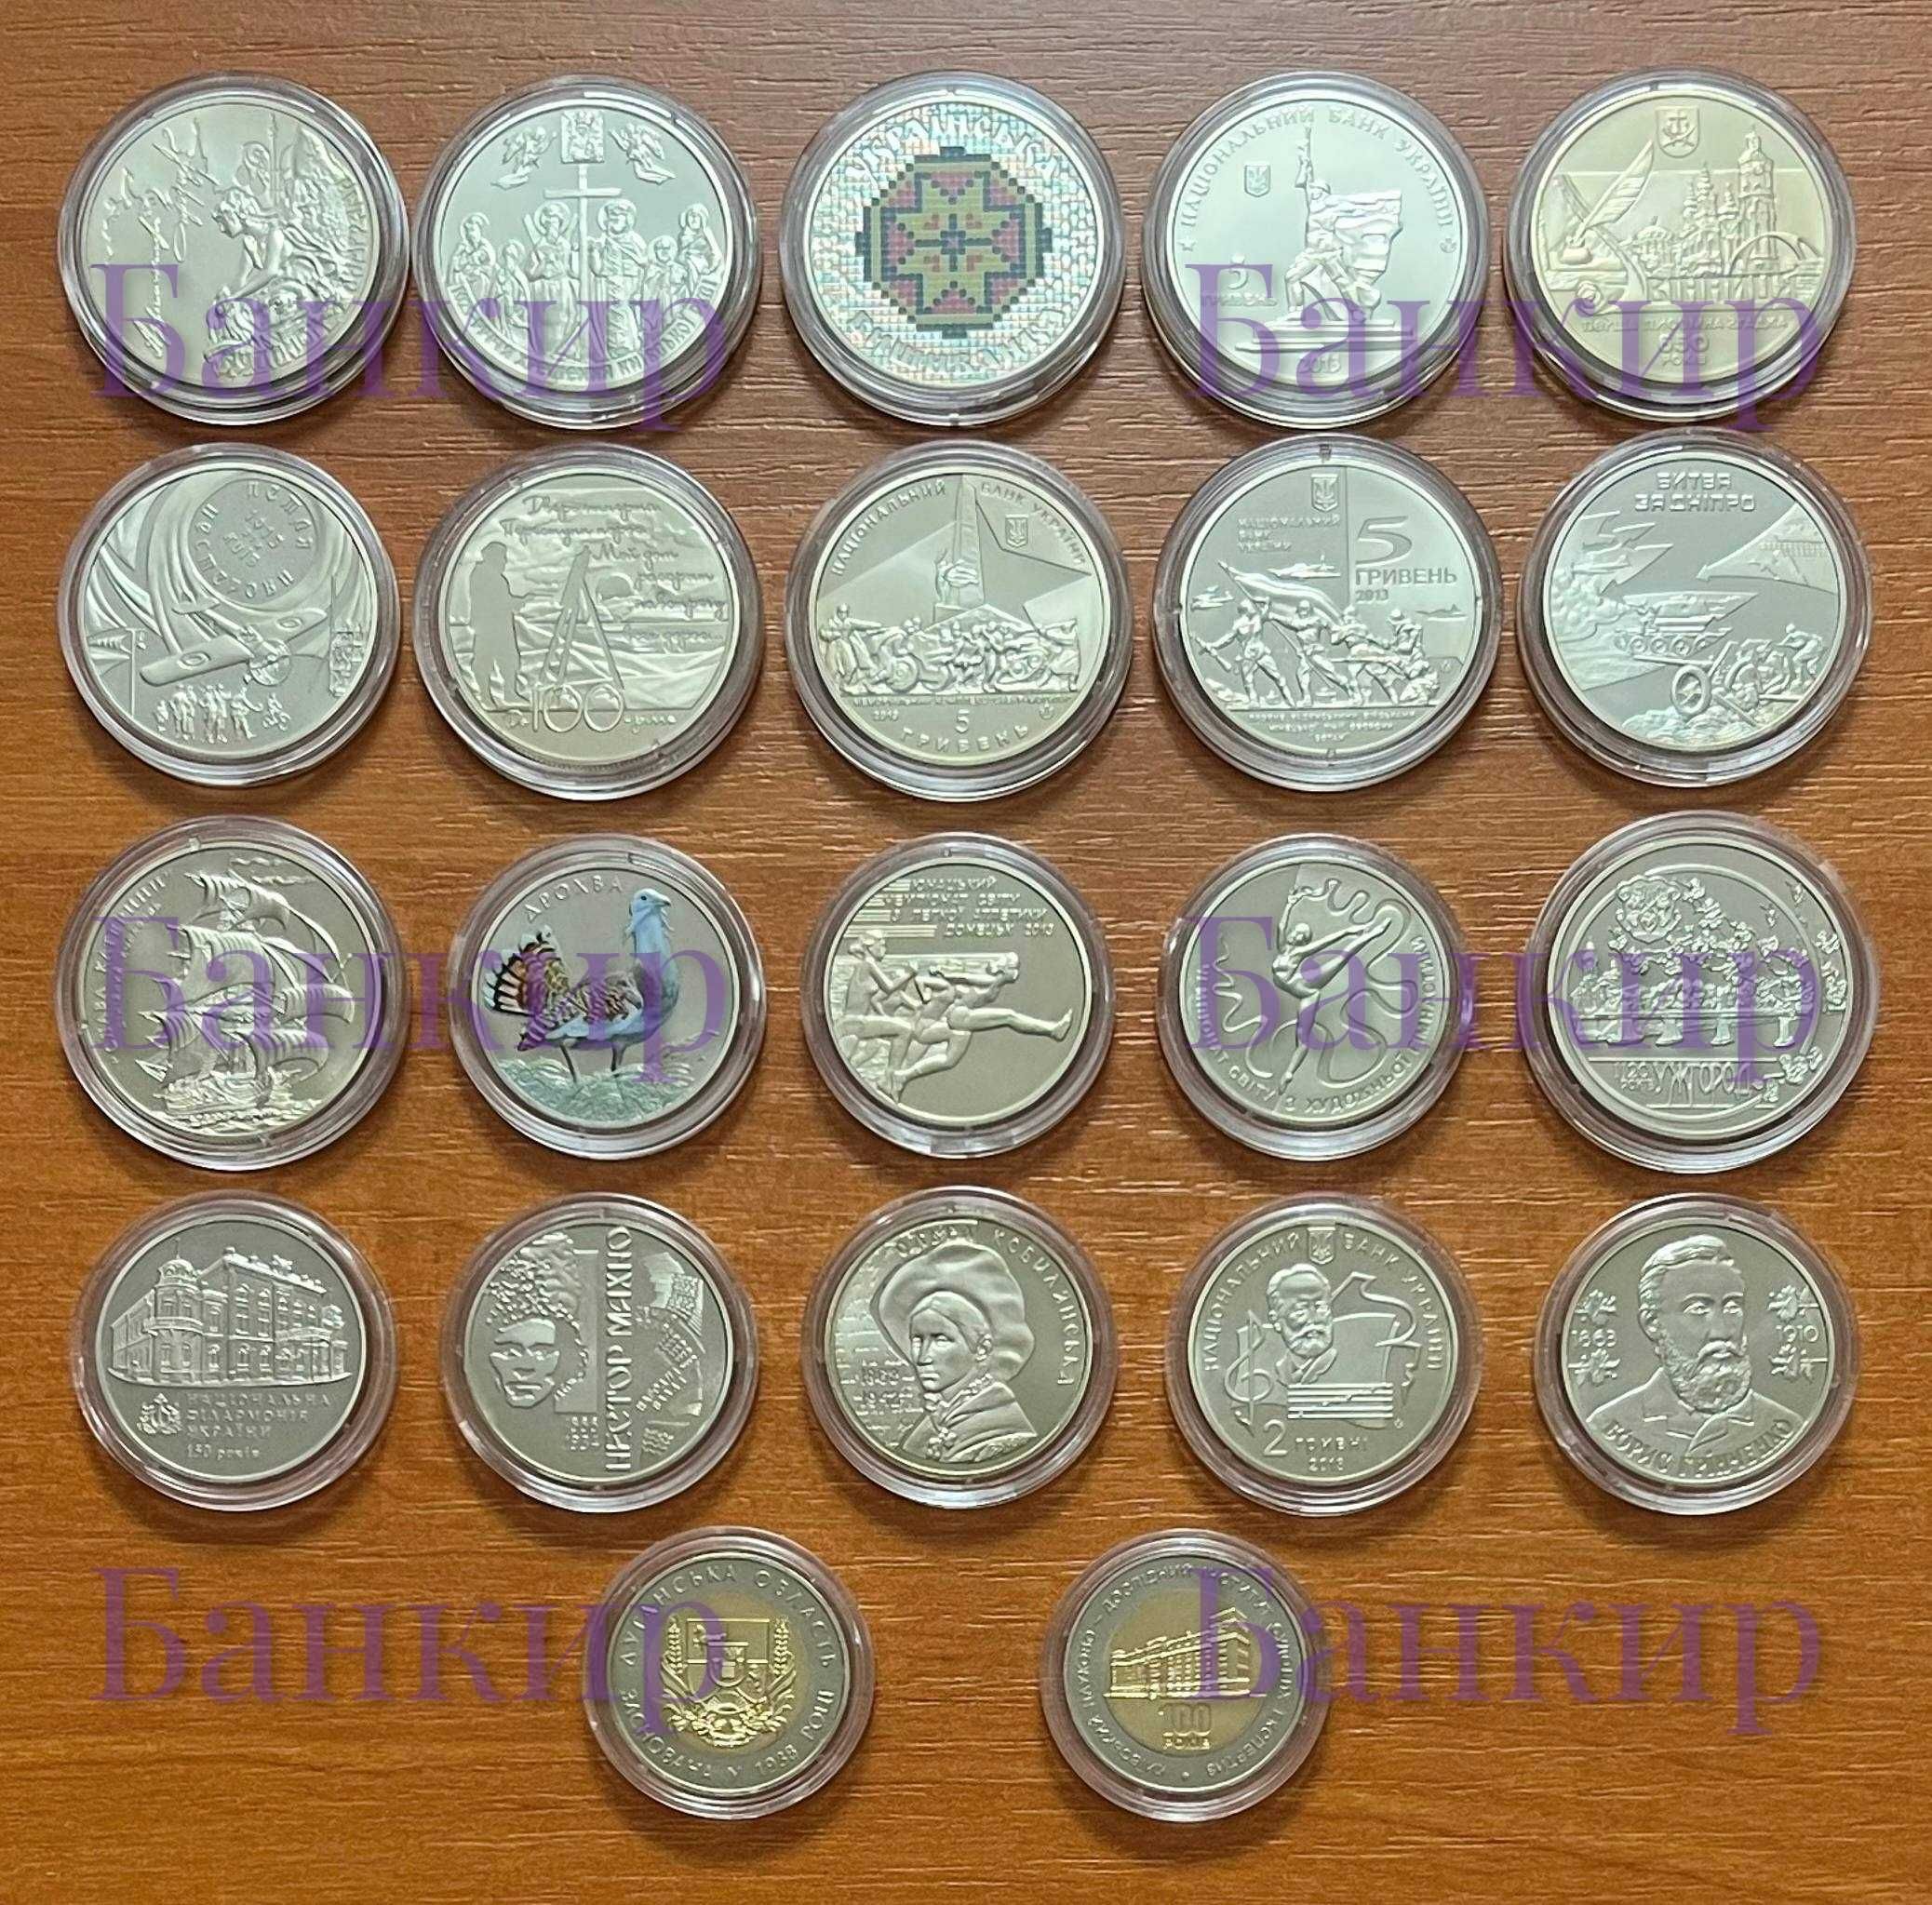 Полный годовой набор монет Украины за 2013 г. (22 монеты)